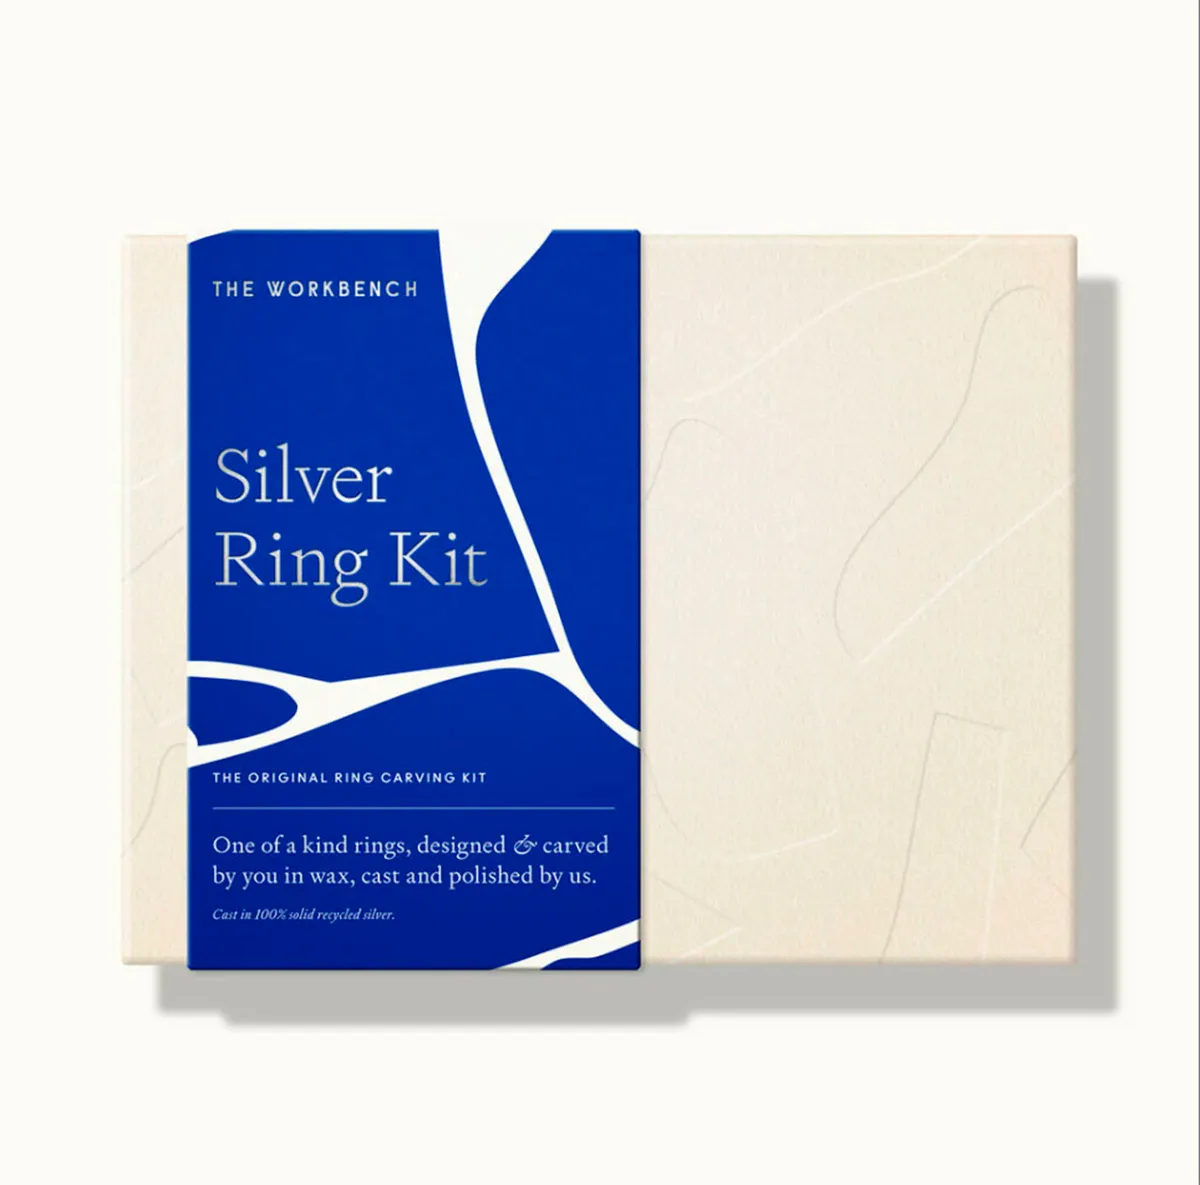 Silver ring kit